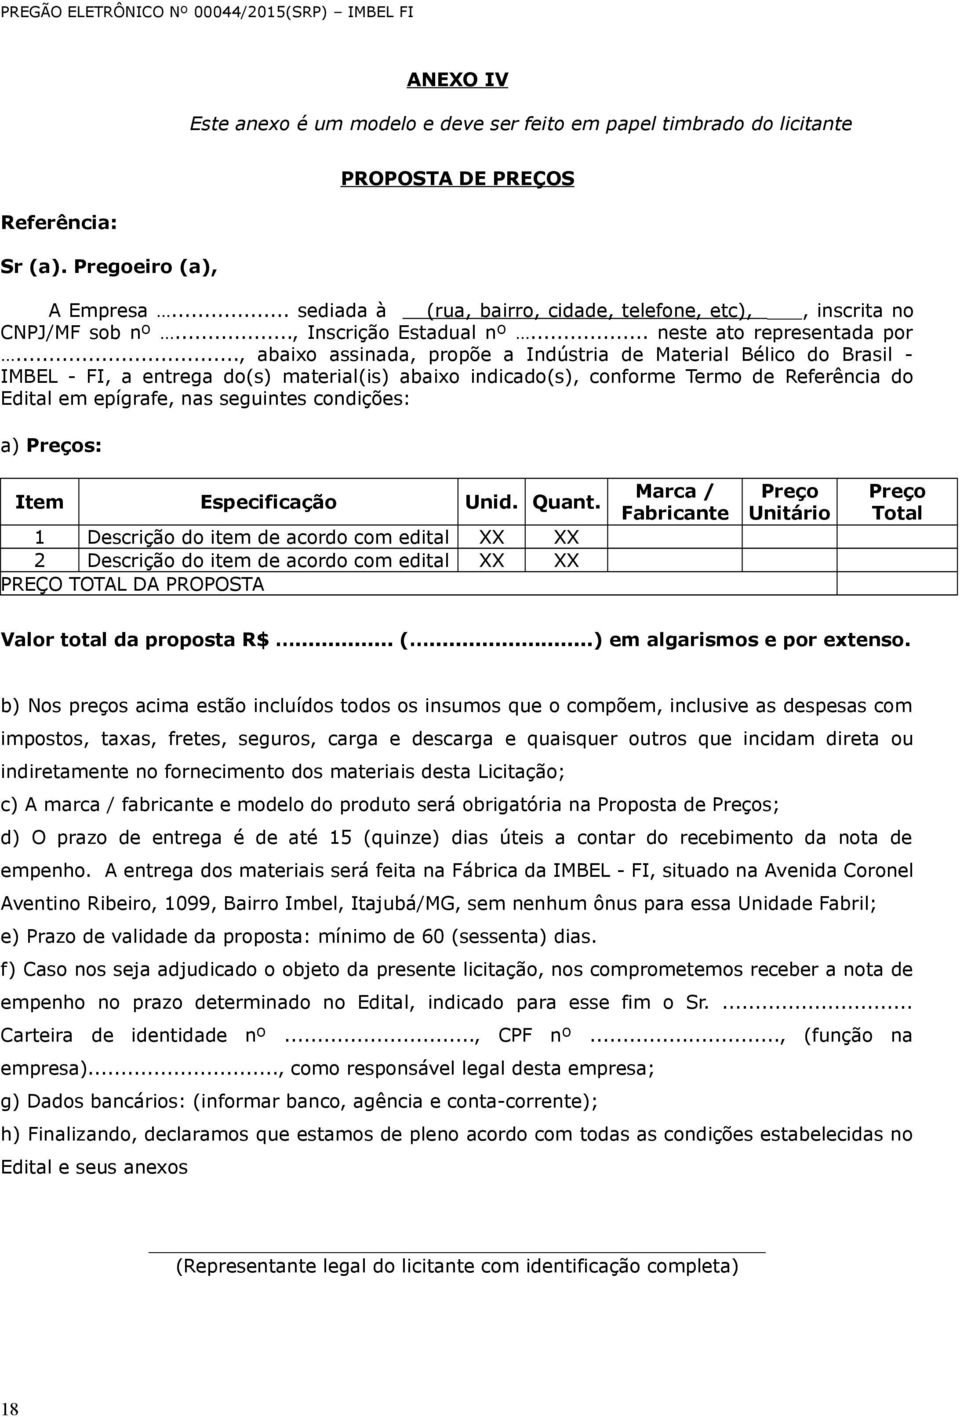 .., abaixo assinada, propõe a Indústria de Material Bélico do Brasil - IMBEL - FI, a entrega do(s) material(is) abaixo indicado(s), conforme Termo de Referência do Edital em epígrafe, nas seguintes